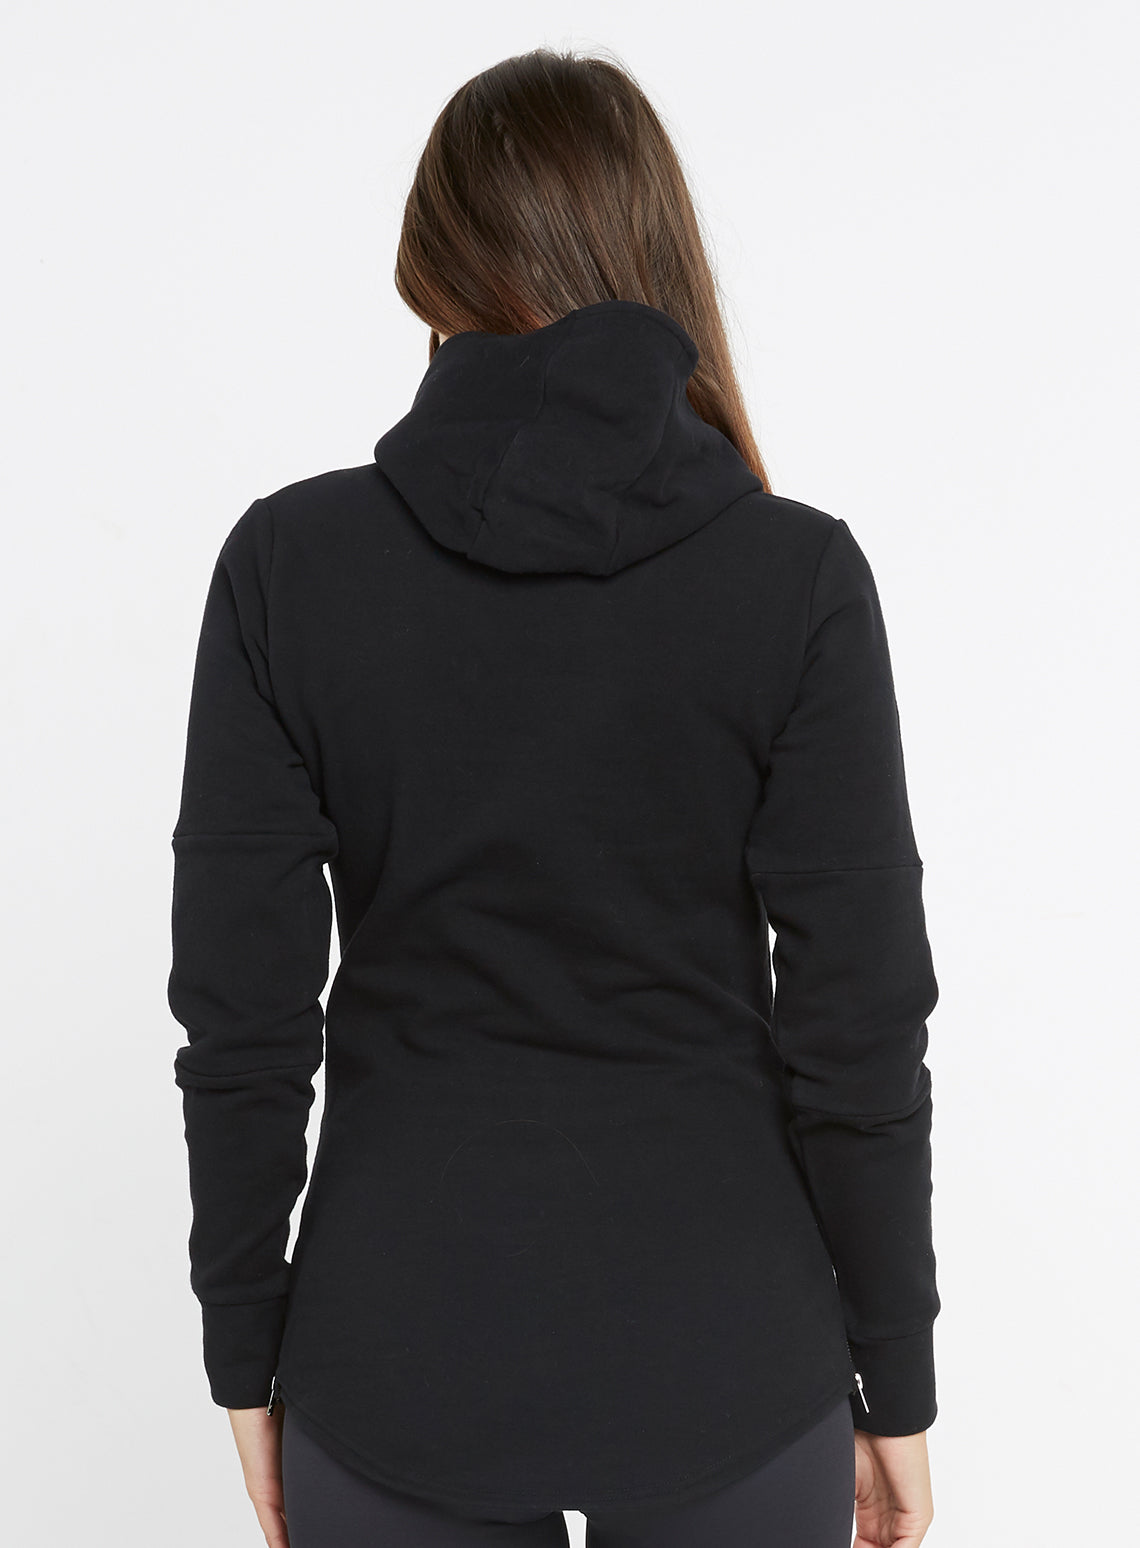 all black hoodie womens